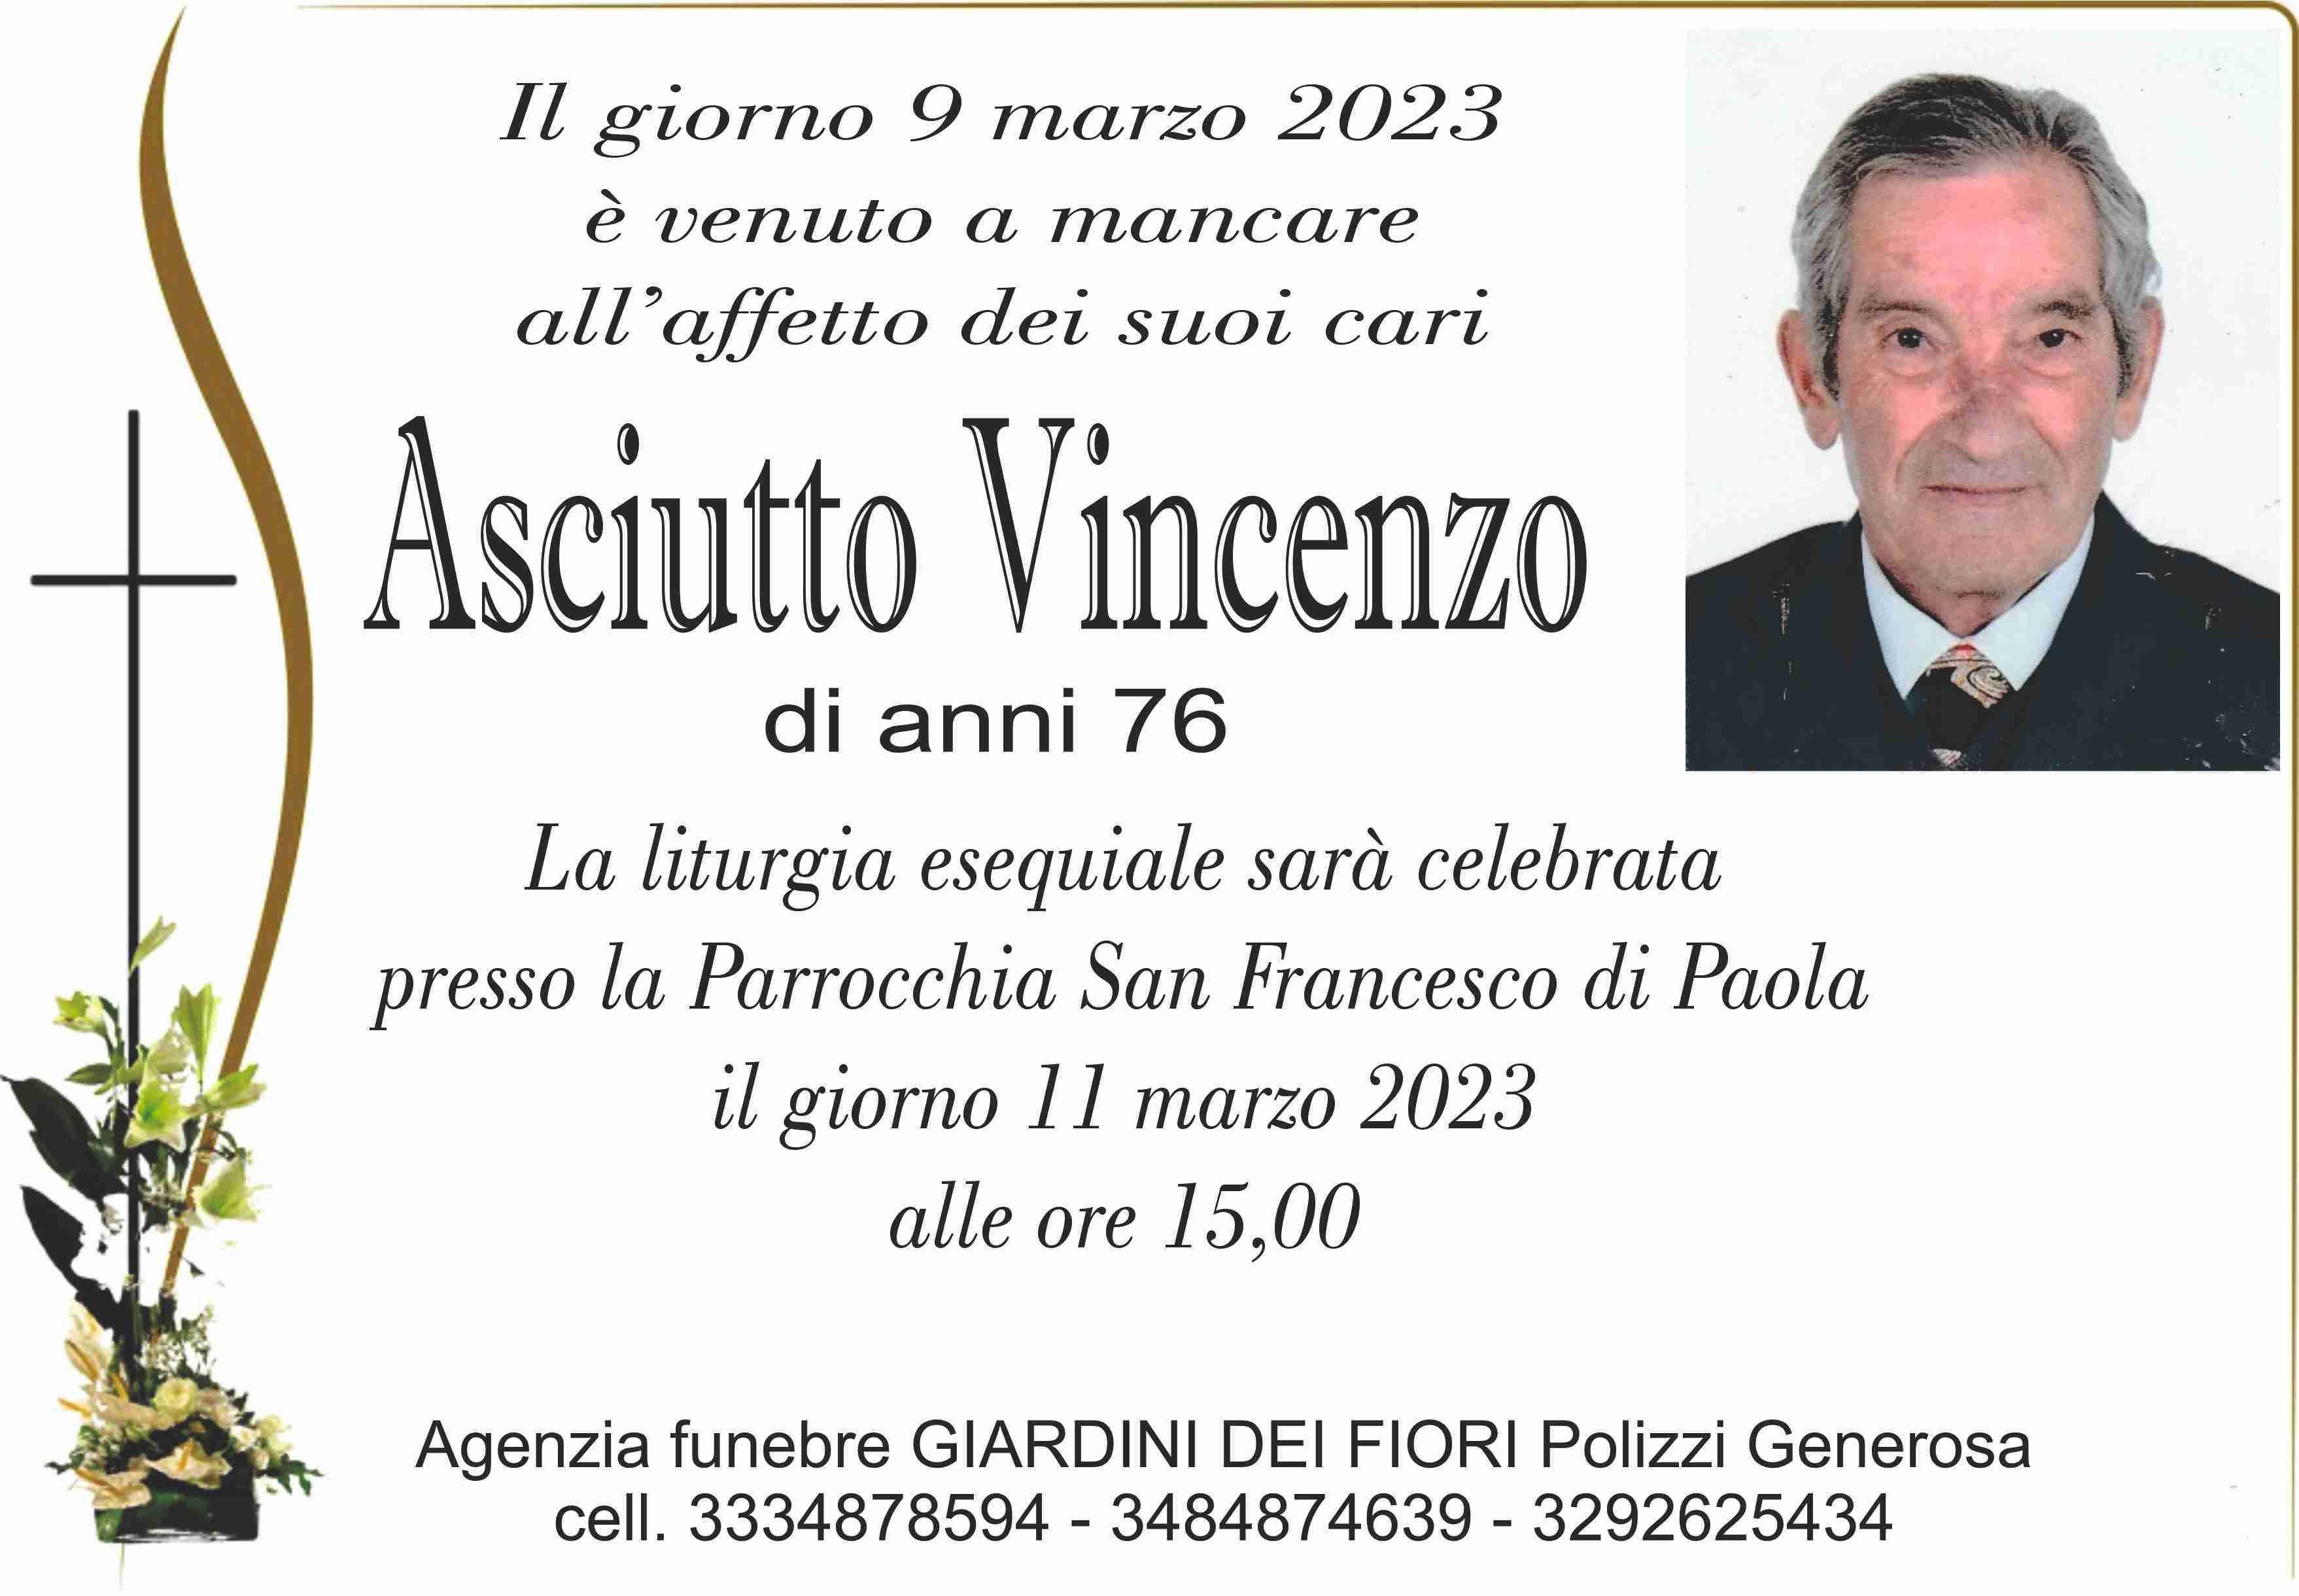 Vincenzo Asciutto